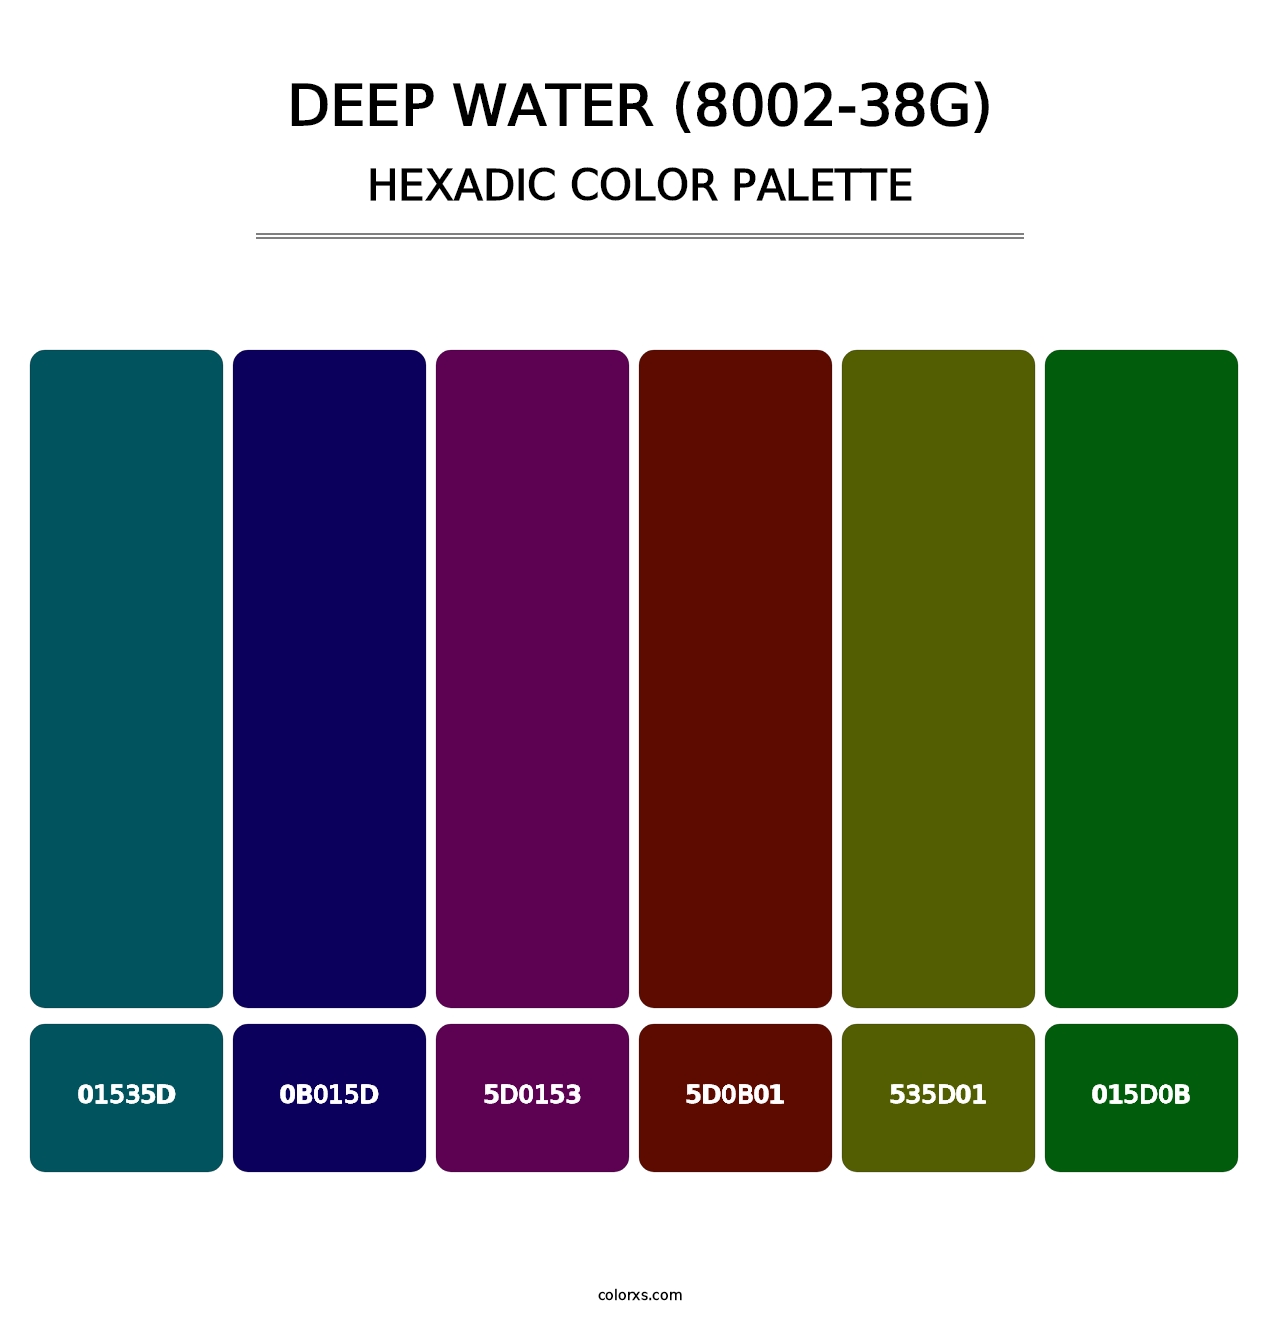 Deep Water (8002-38G) - Hexadic Color Palette